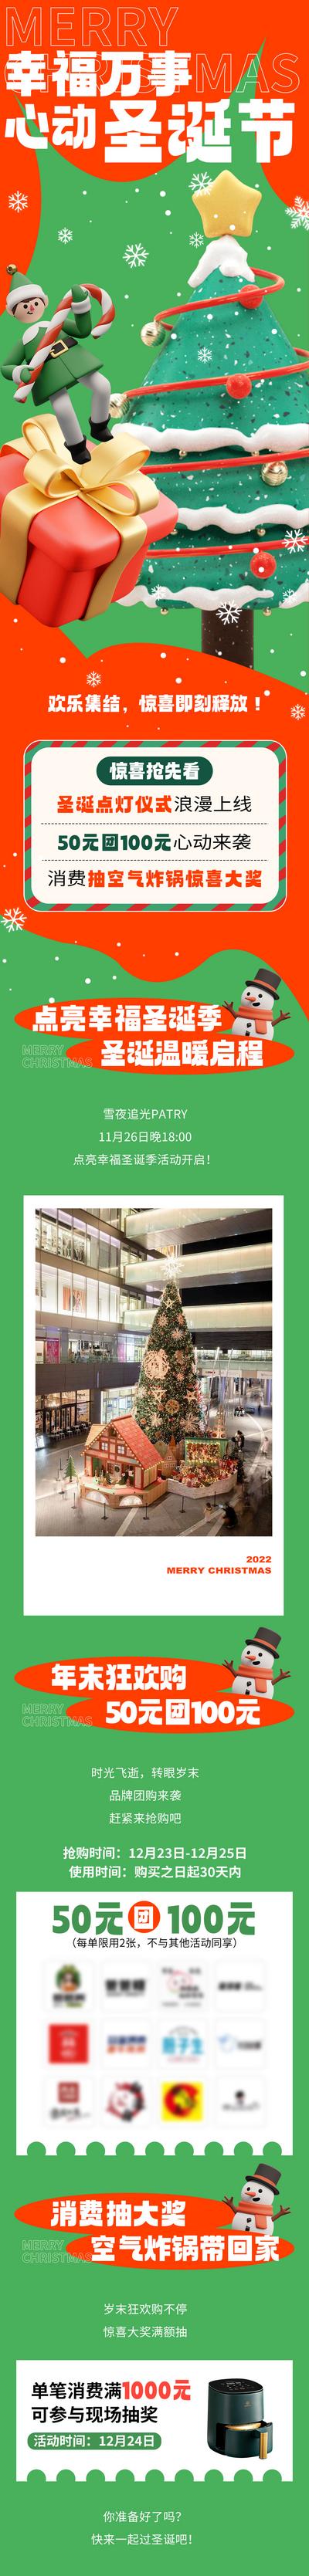 南门网 专题设计 长图 商场 公历节日 圣诞节 狂欢购 抽奖 圣诞树